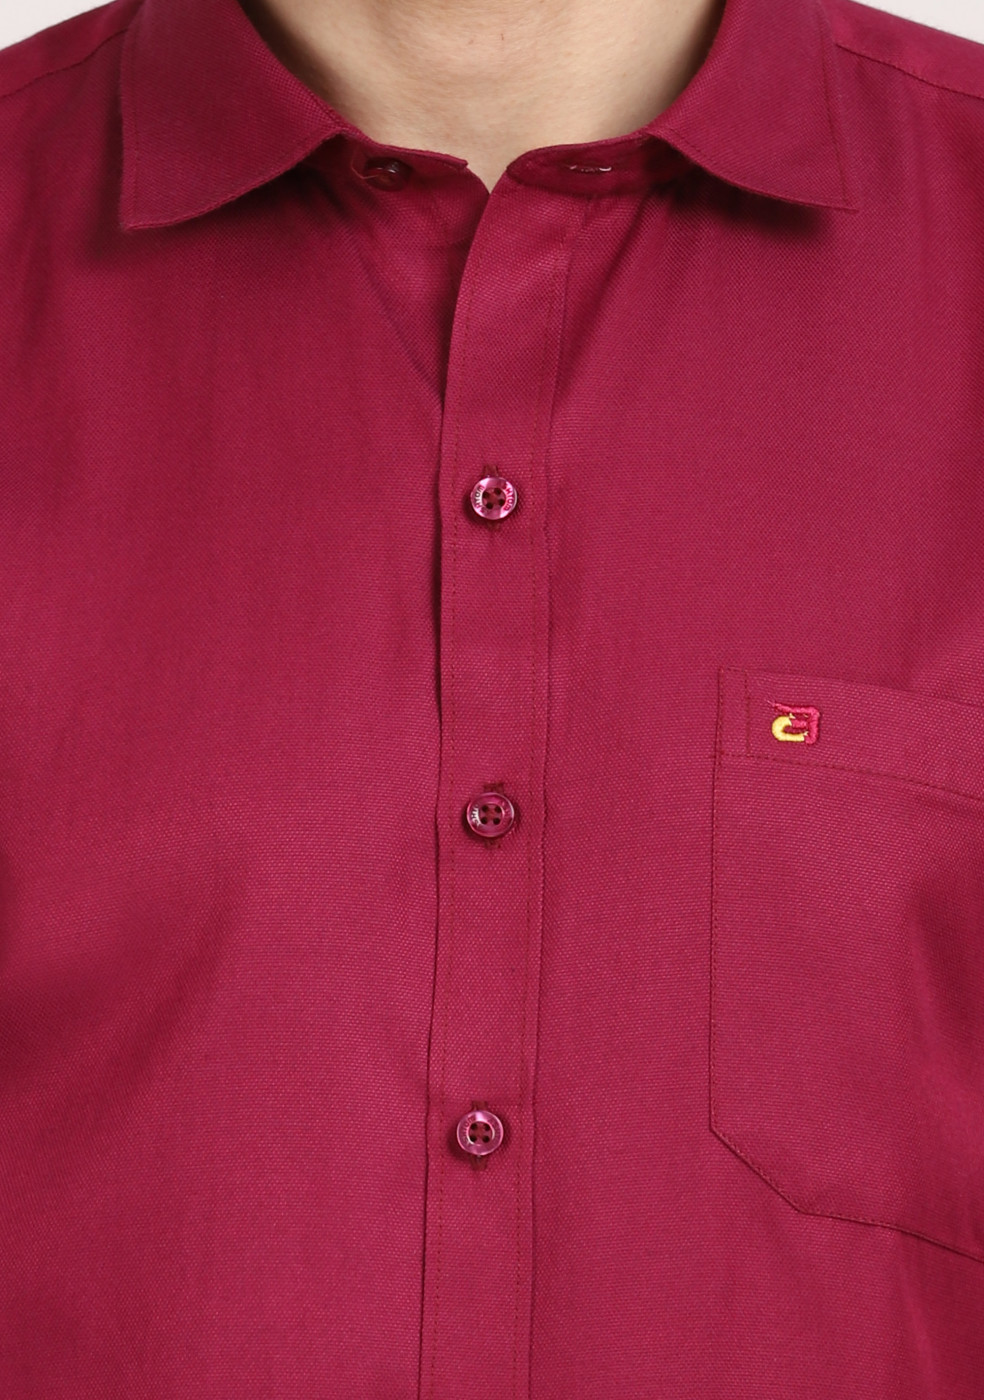 Purple Red Plain Cotton Shirt For Men Regular Fit